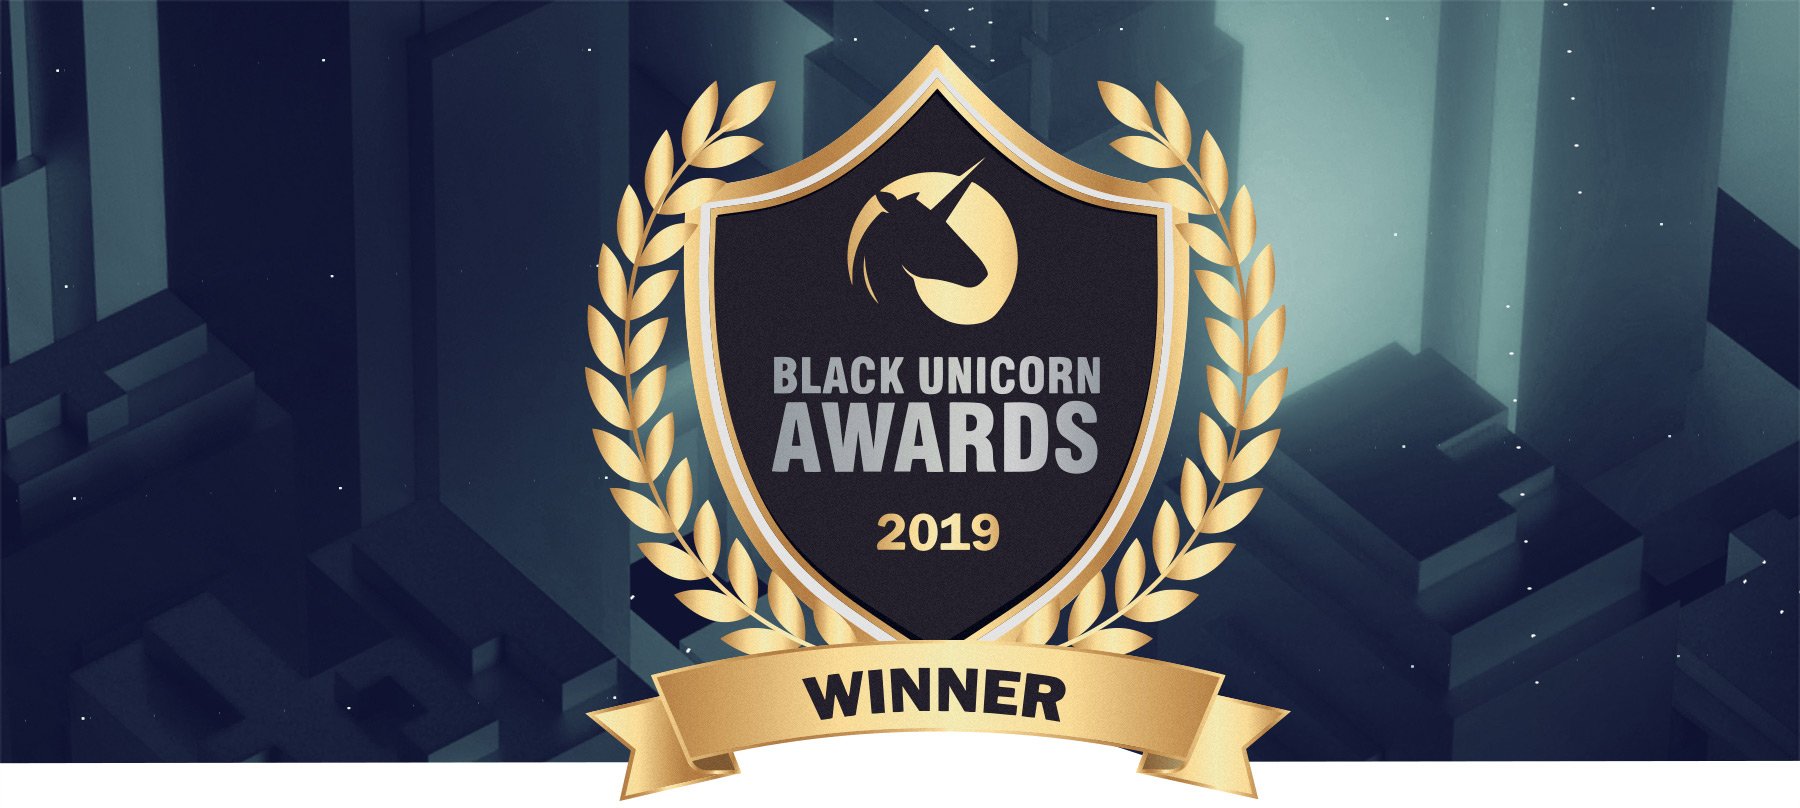 Black Unicorn Awards 2019